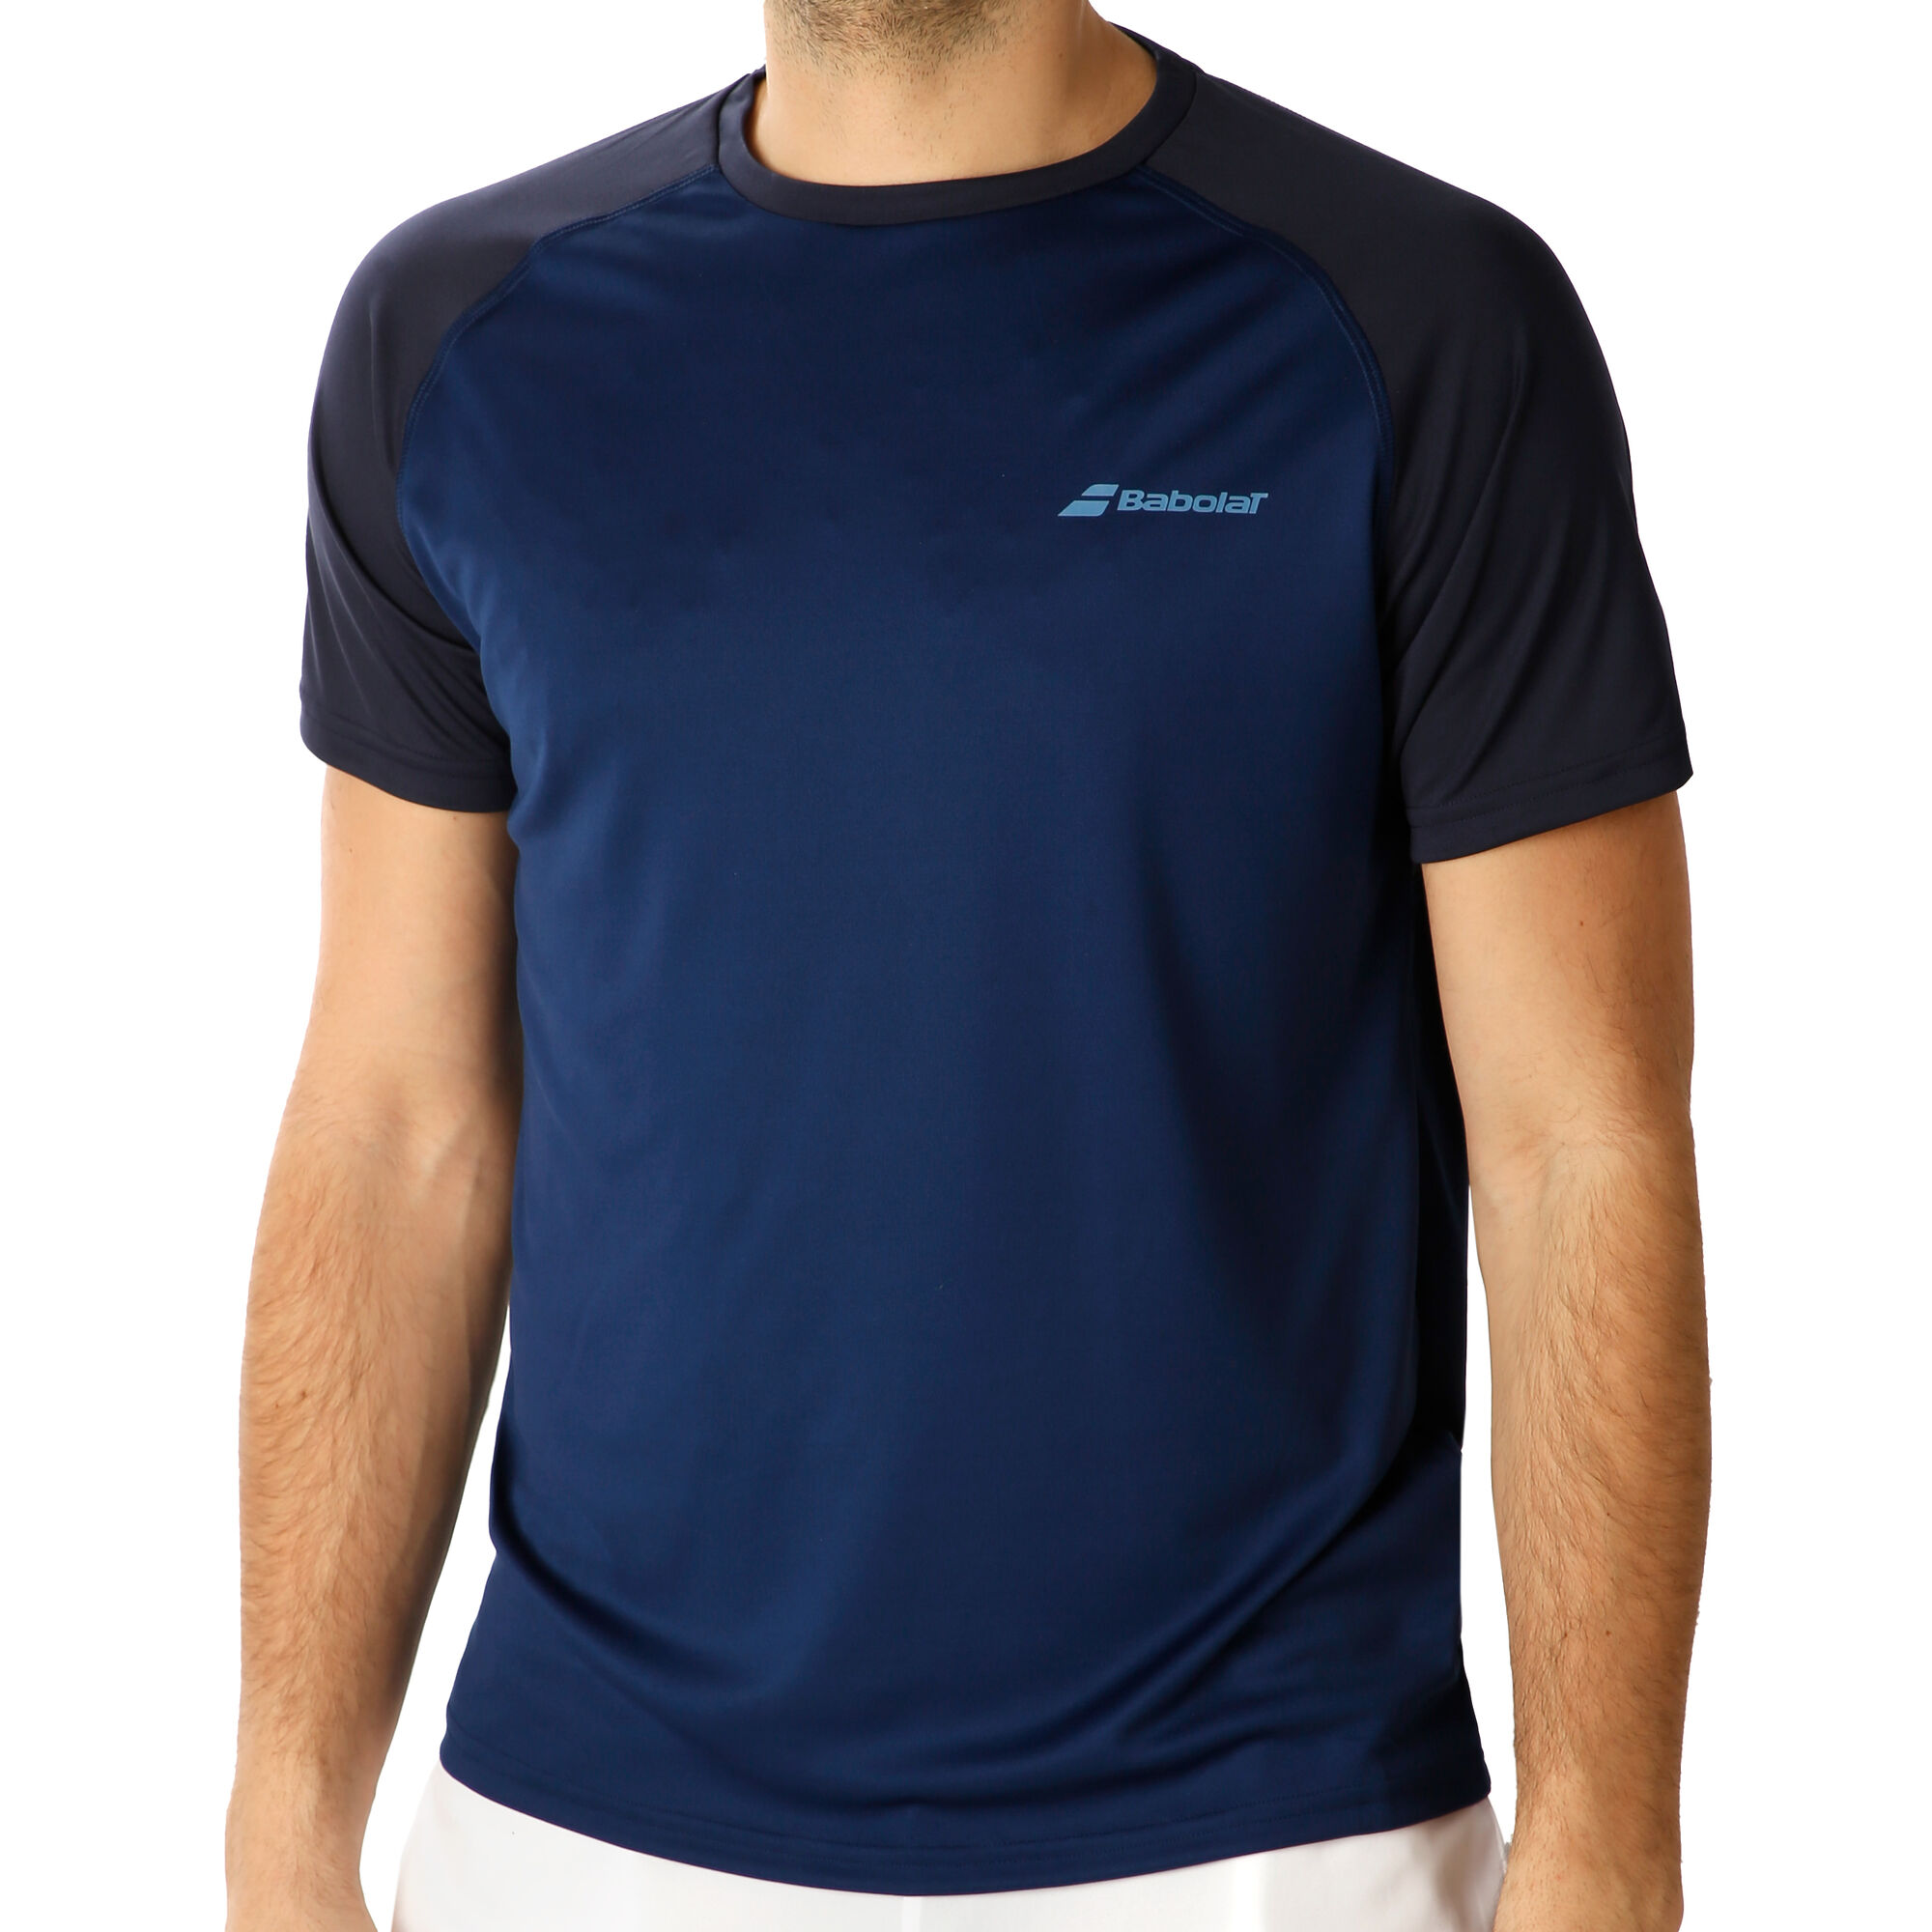 Men Tennis T-Shirt - Basic Light Blue Grey